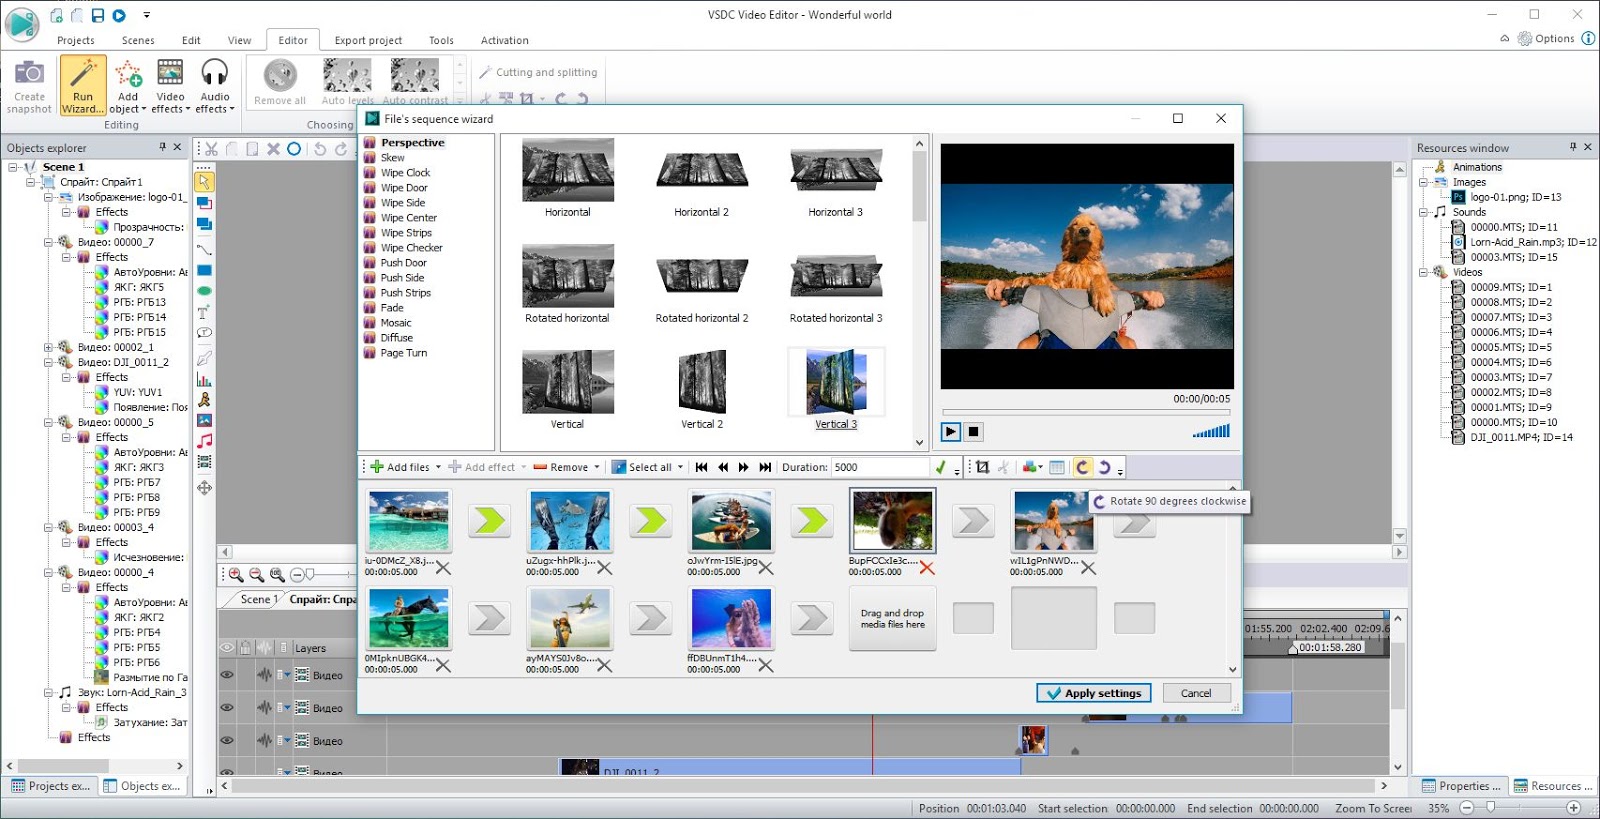 تحميل برنامج VSDC Free Video Editor 2020  برنامج تحرير و تعديل  الفيديو عربي للكمبيوتر مجانا